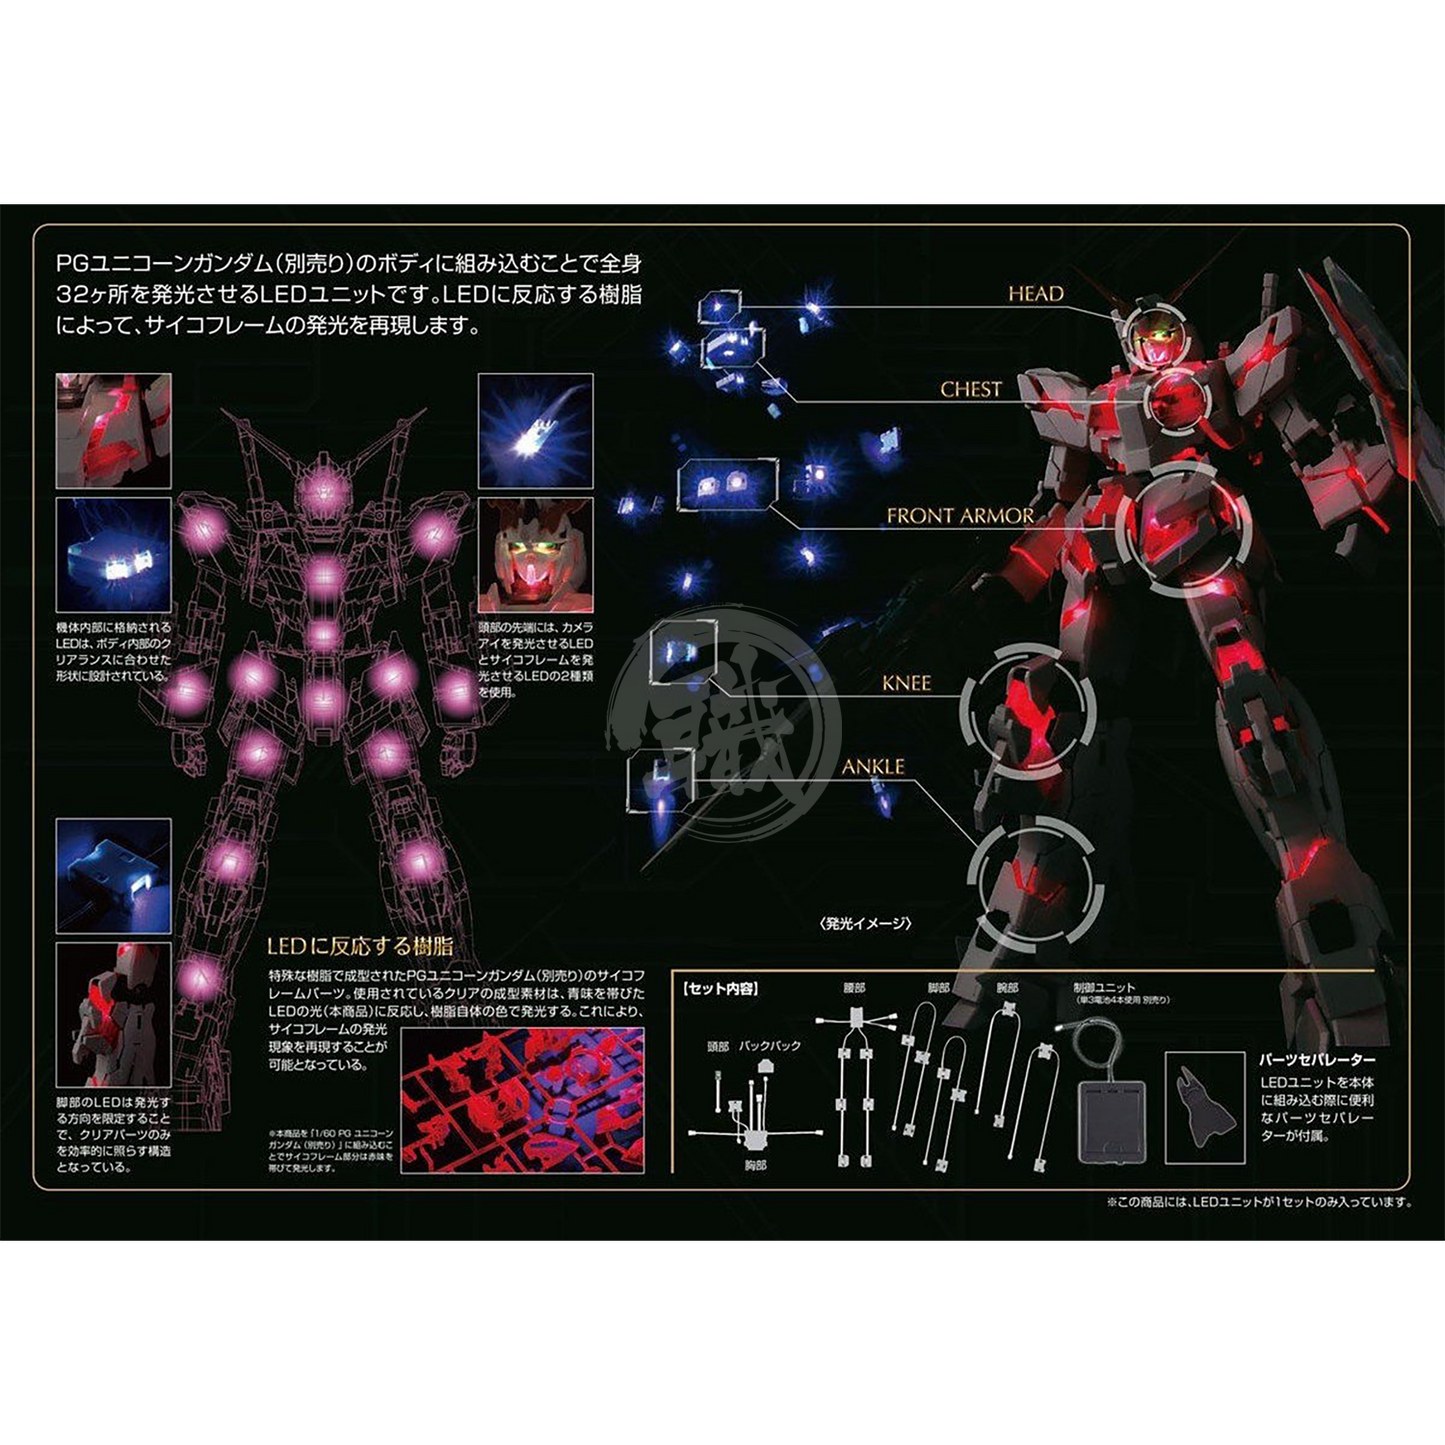 Bandai - PG Unicorn Gundam LED System - ShokuninGunpla